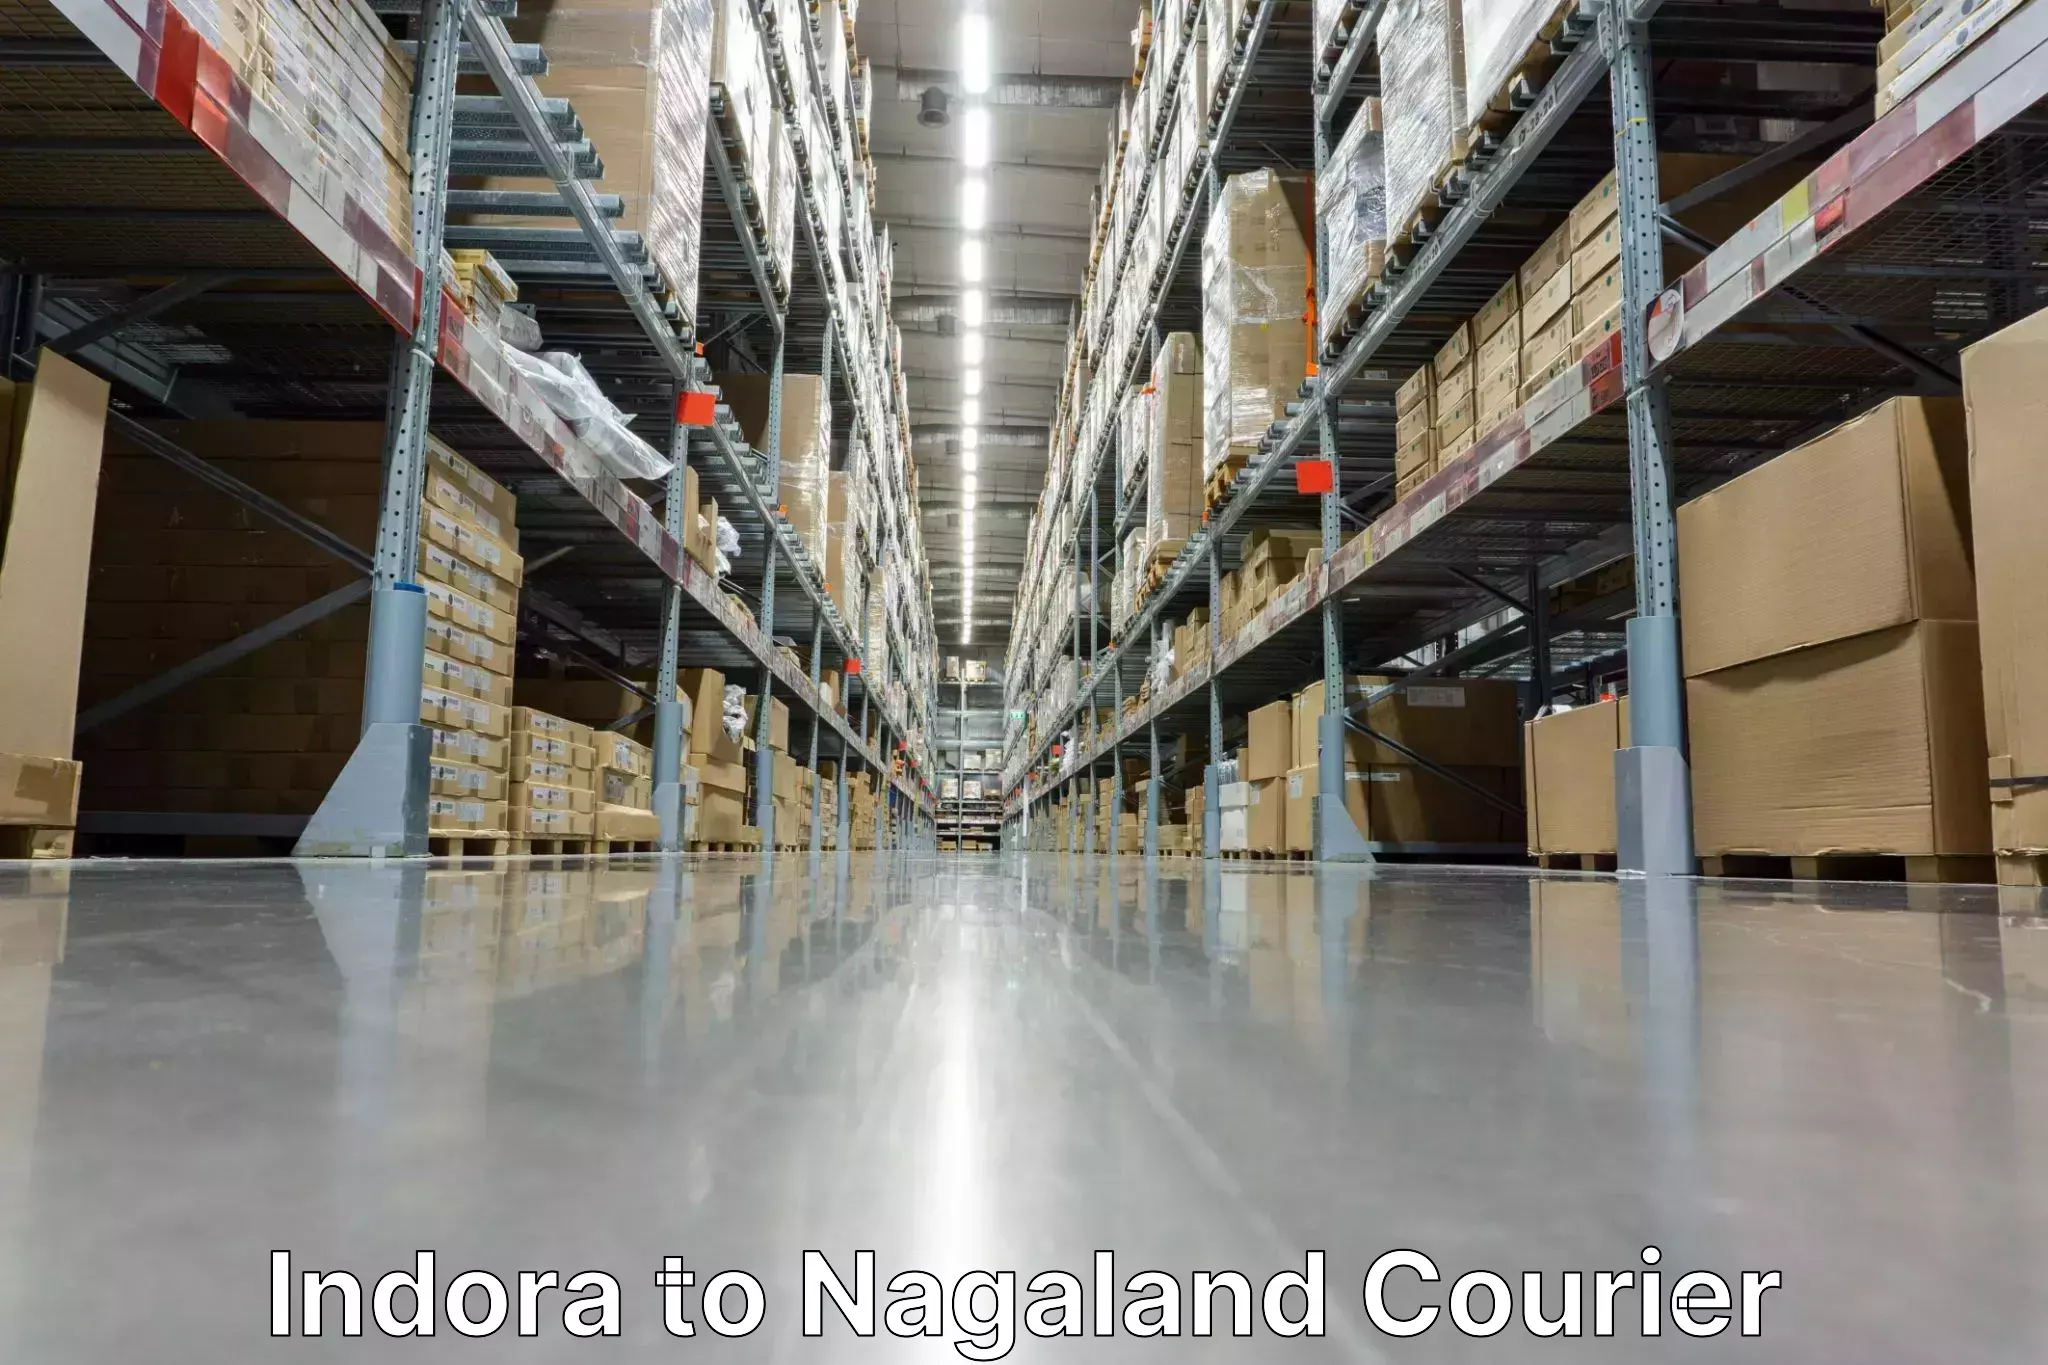 Customized shipping options Indora to NIT Nagaland